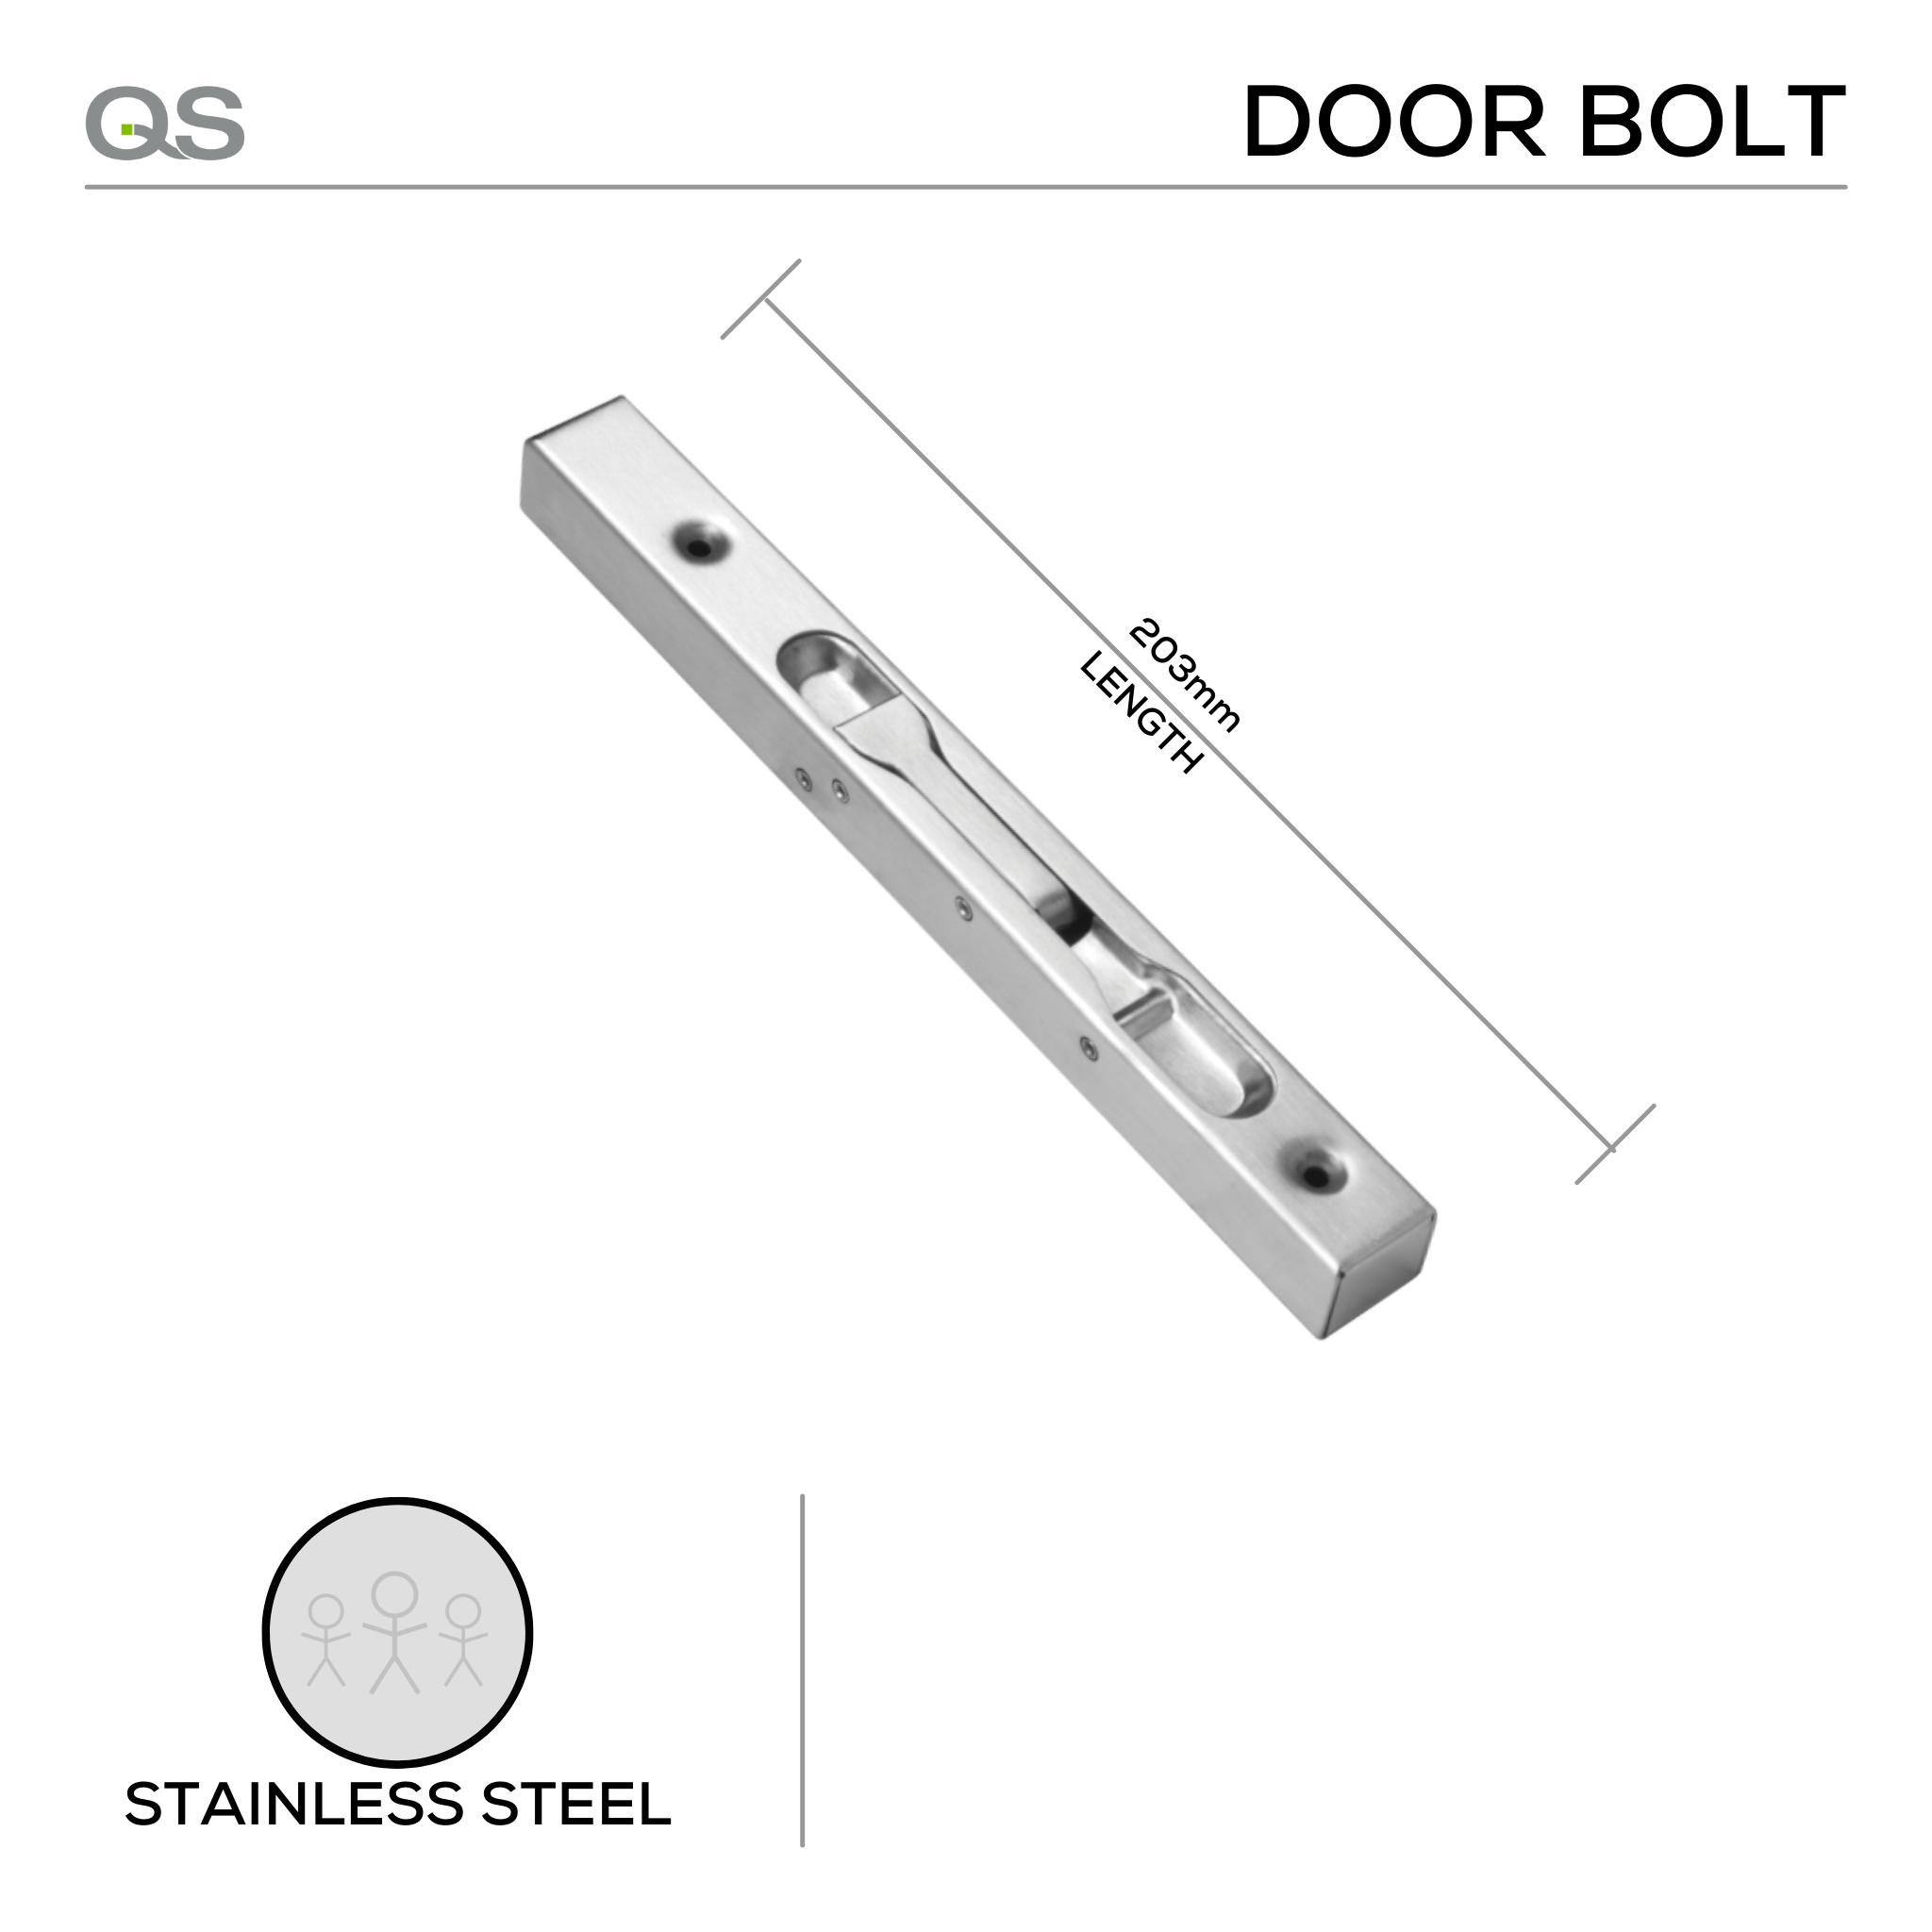 QS4451/1 203, Door Bolt, 203mm (l), Stainless Steel, QS